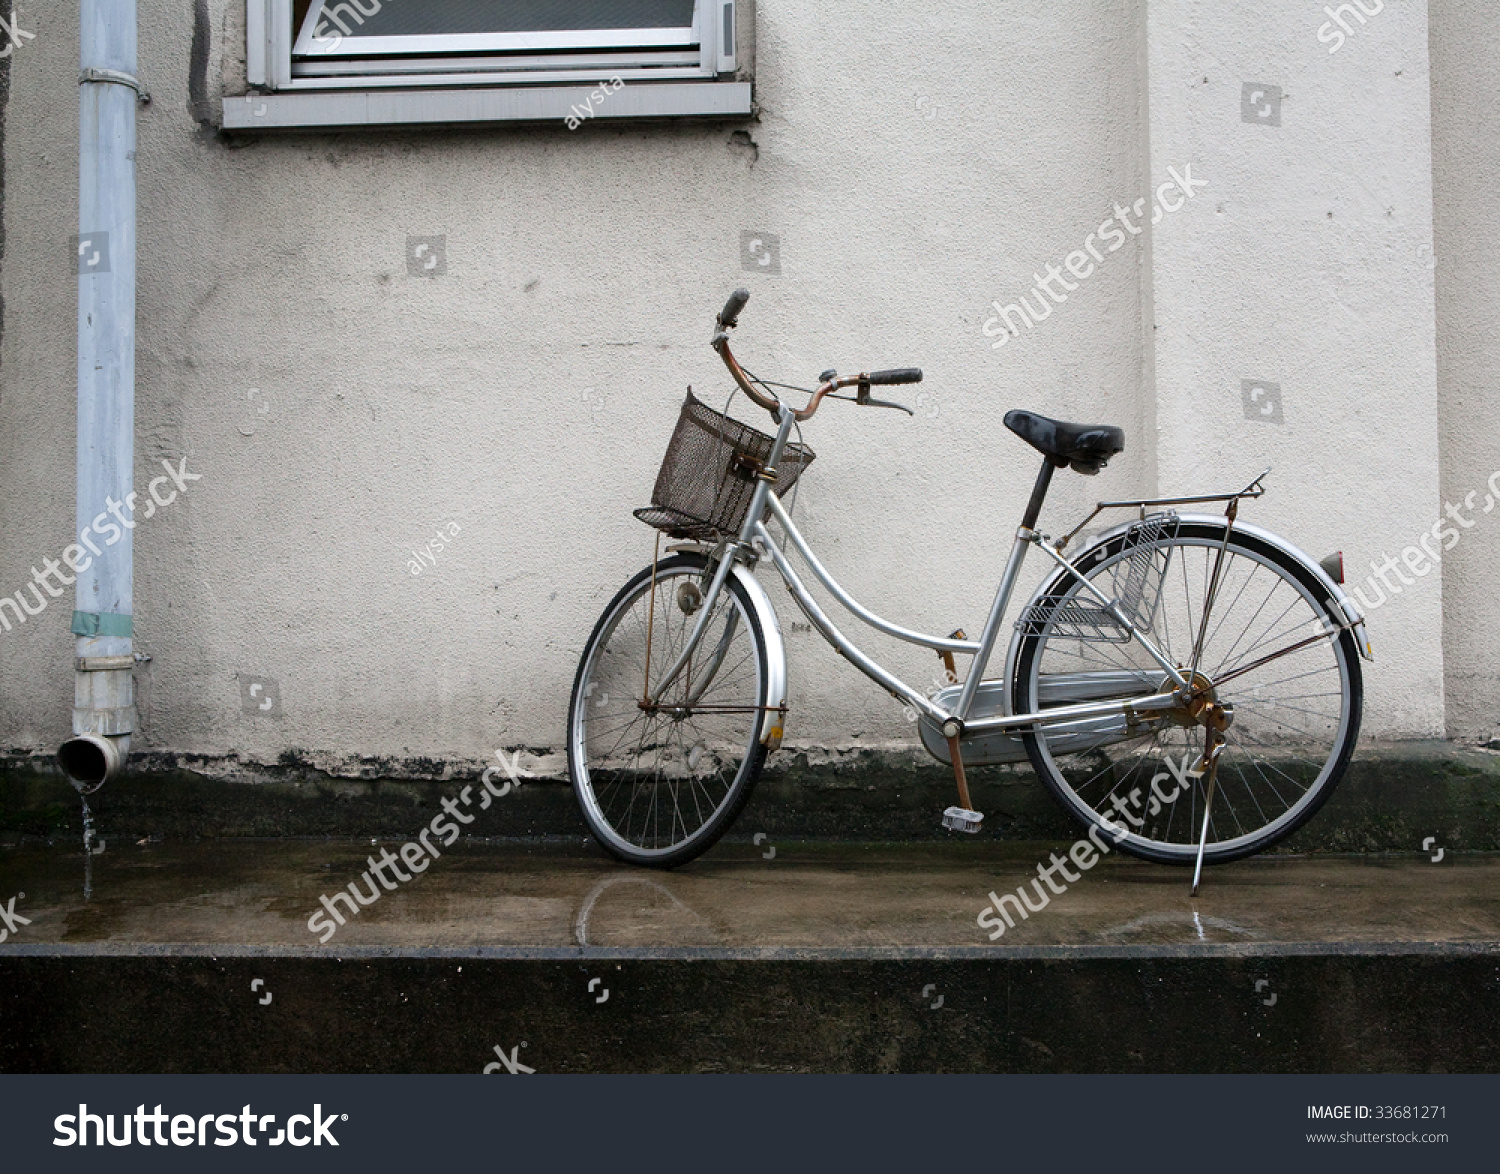 silver bike basket